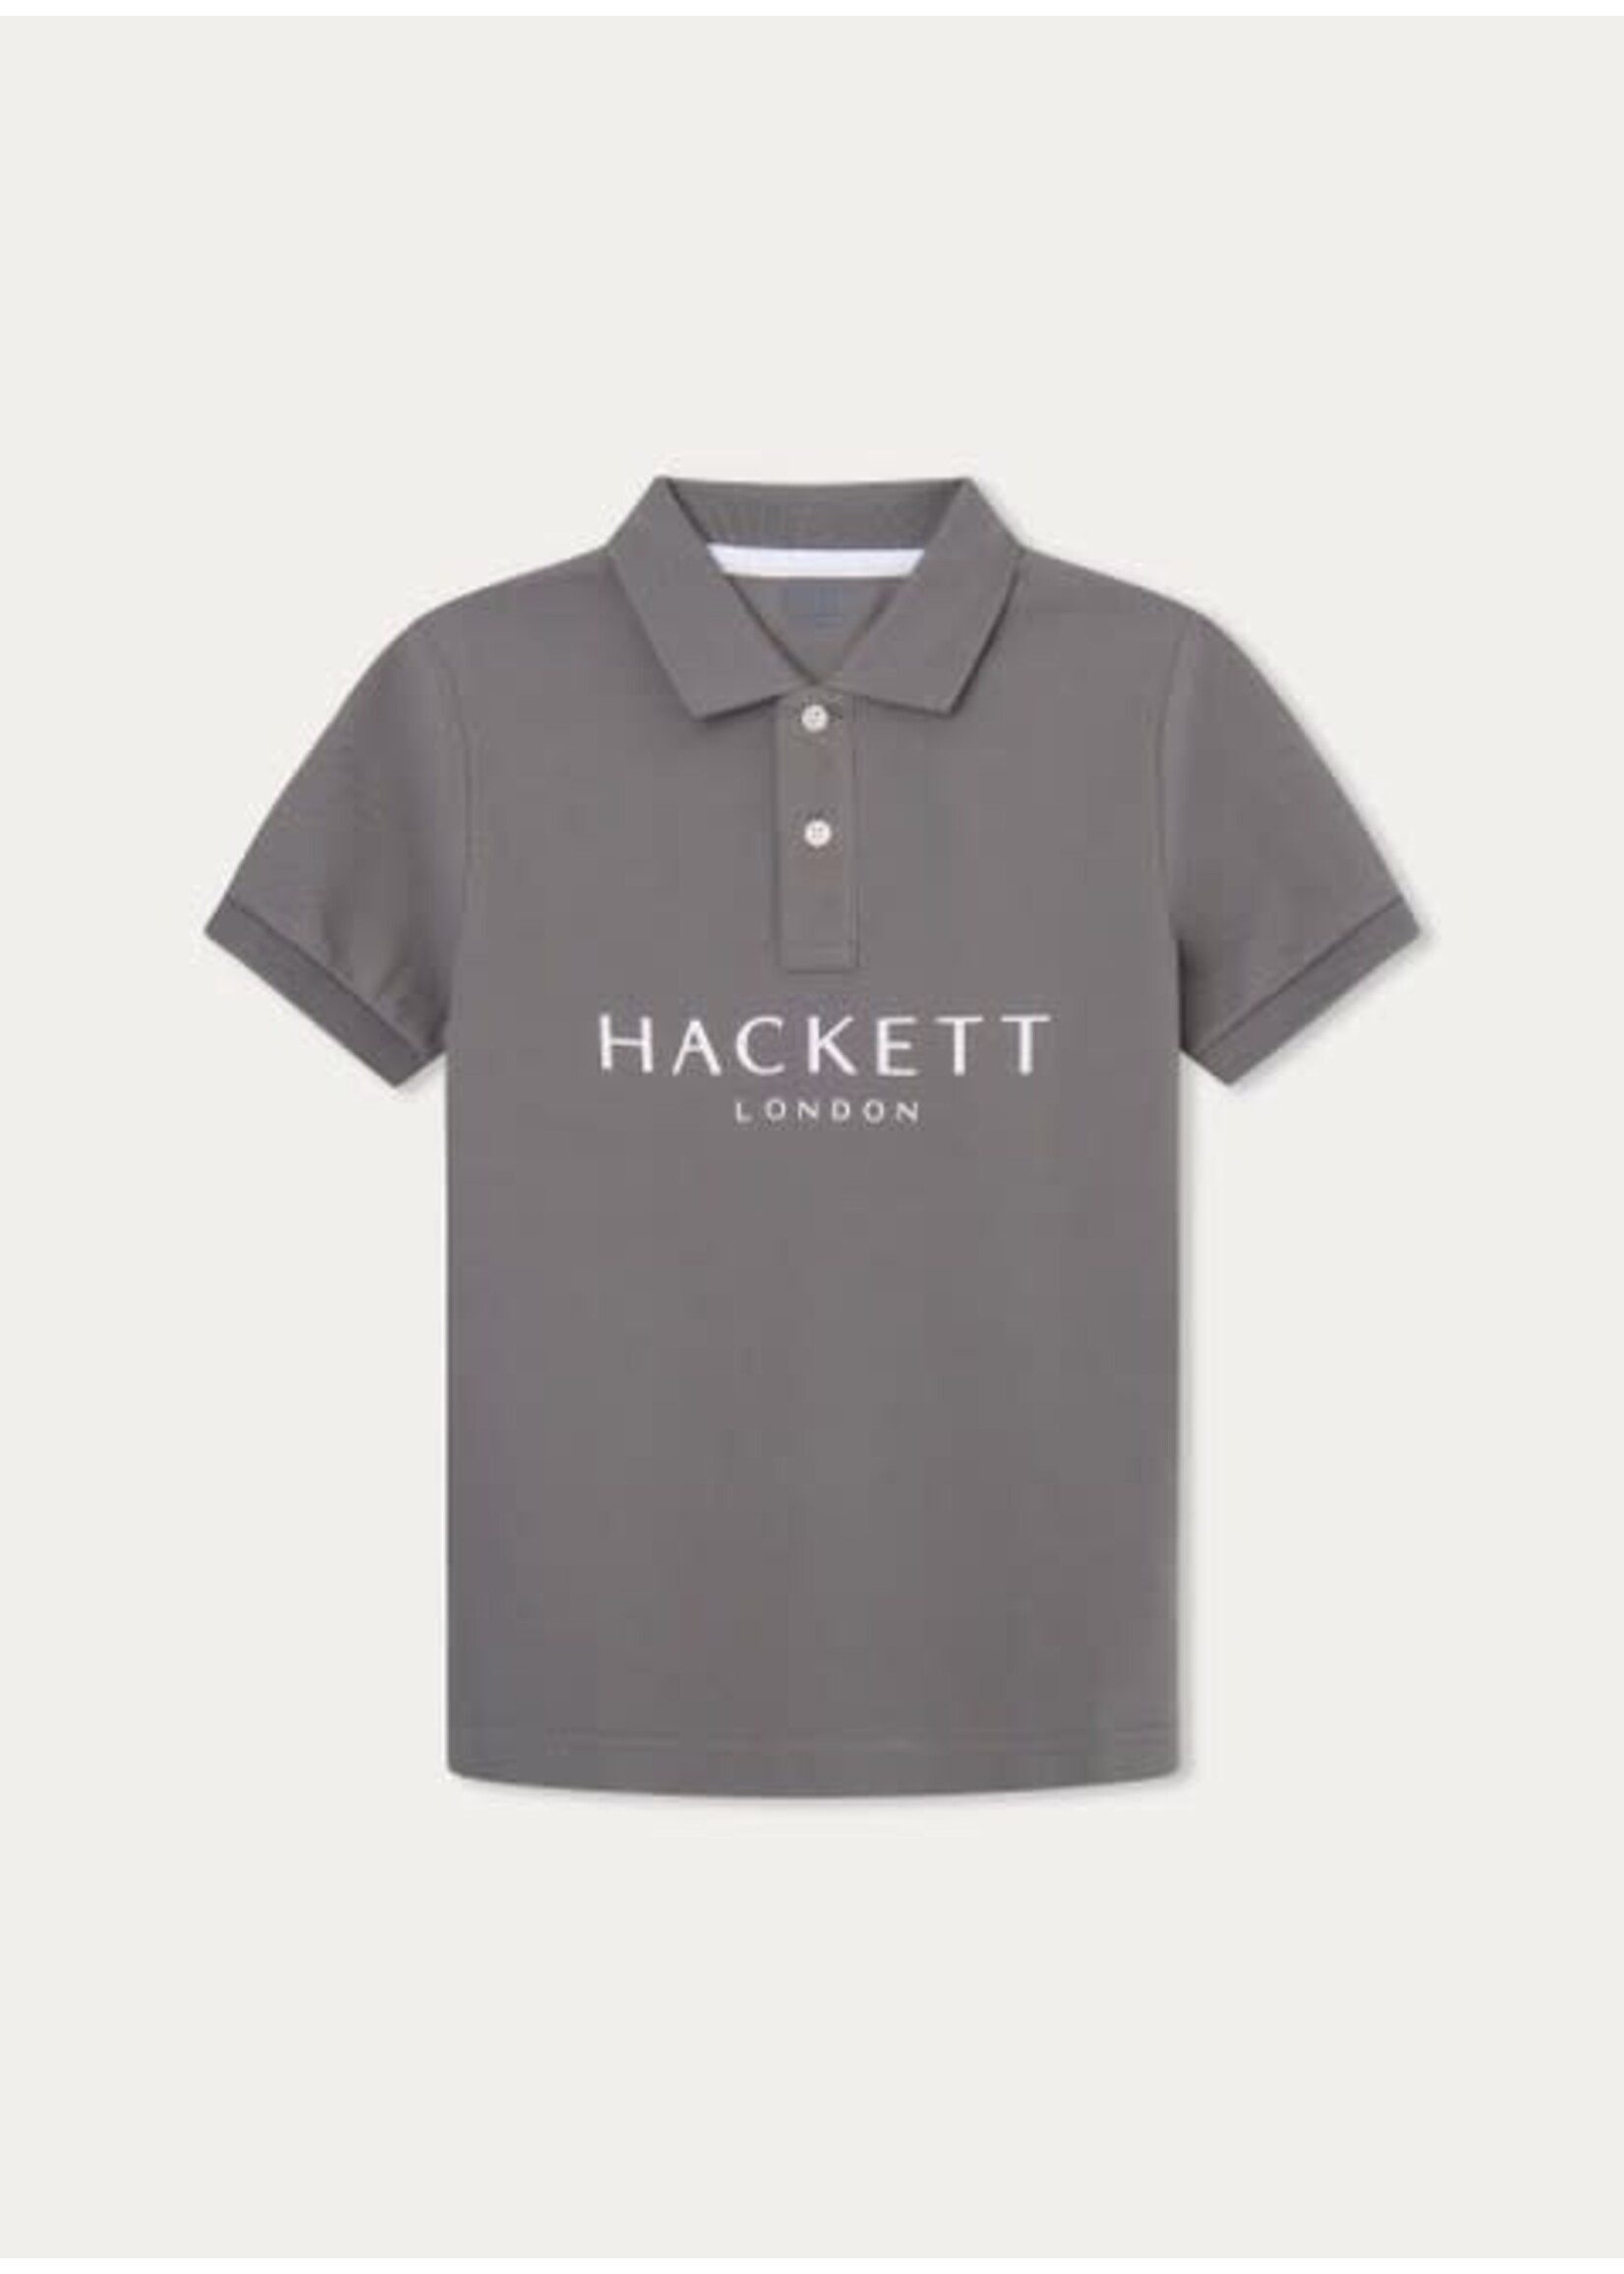 Hackett HACKETT LDN POLO 8HOKHAKI - HK561562